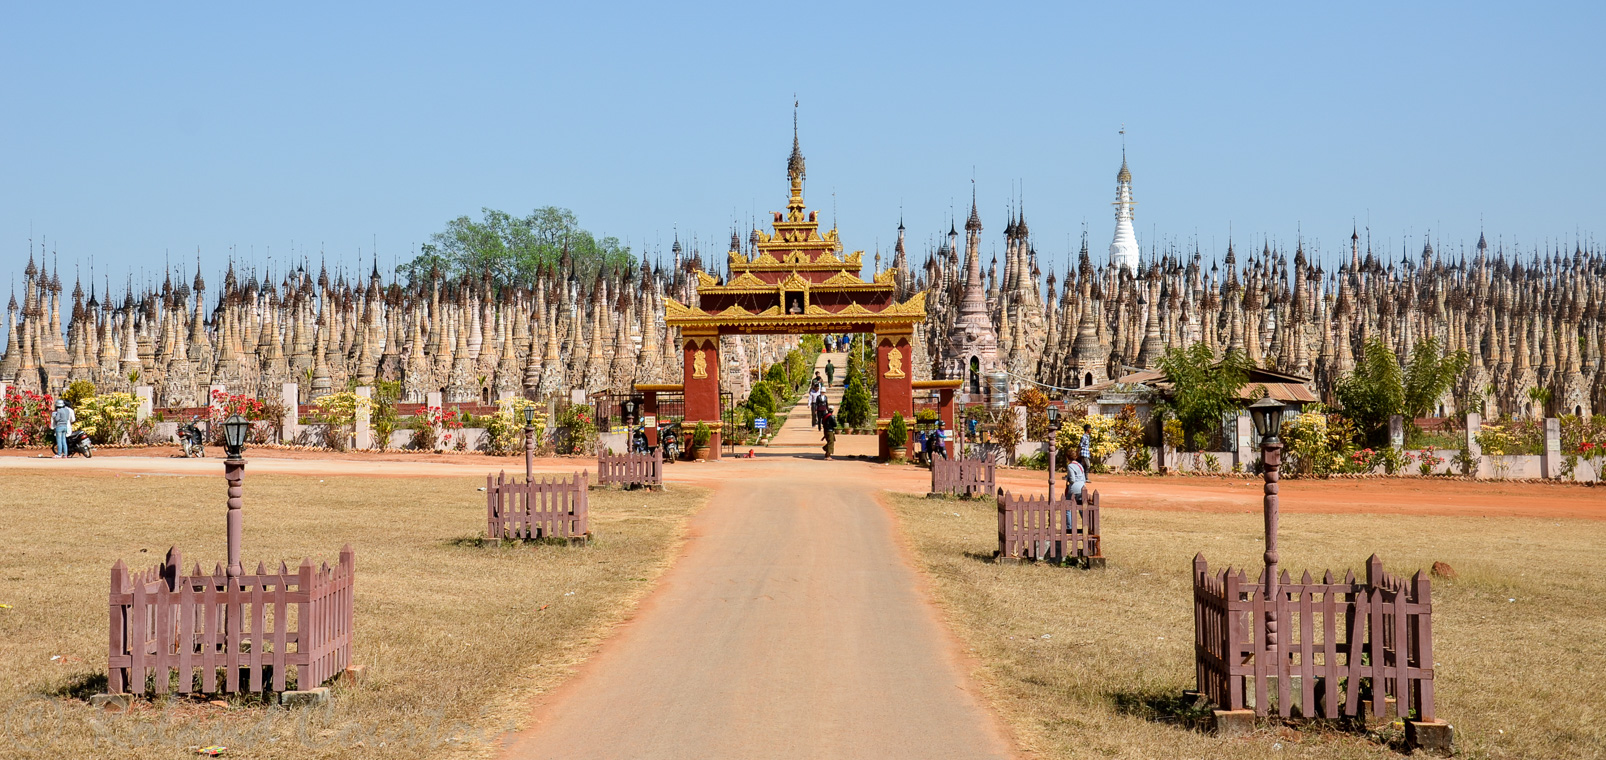 La pagode de Kakku compte plus de deux mille stupas étroitement rangés dans un enclos d'un kilometre carré.